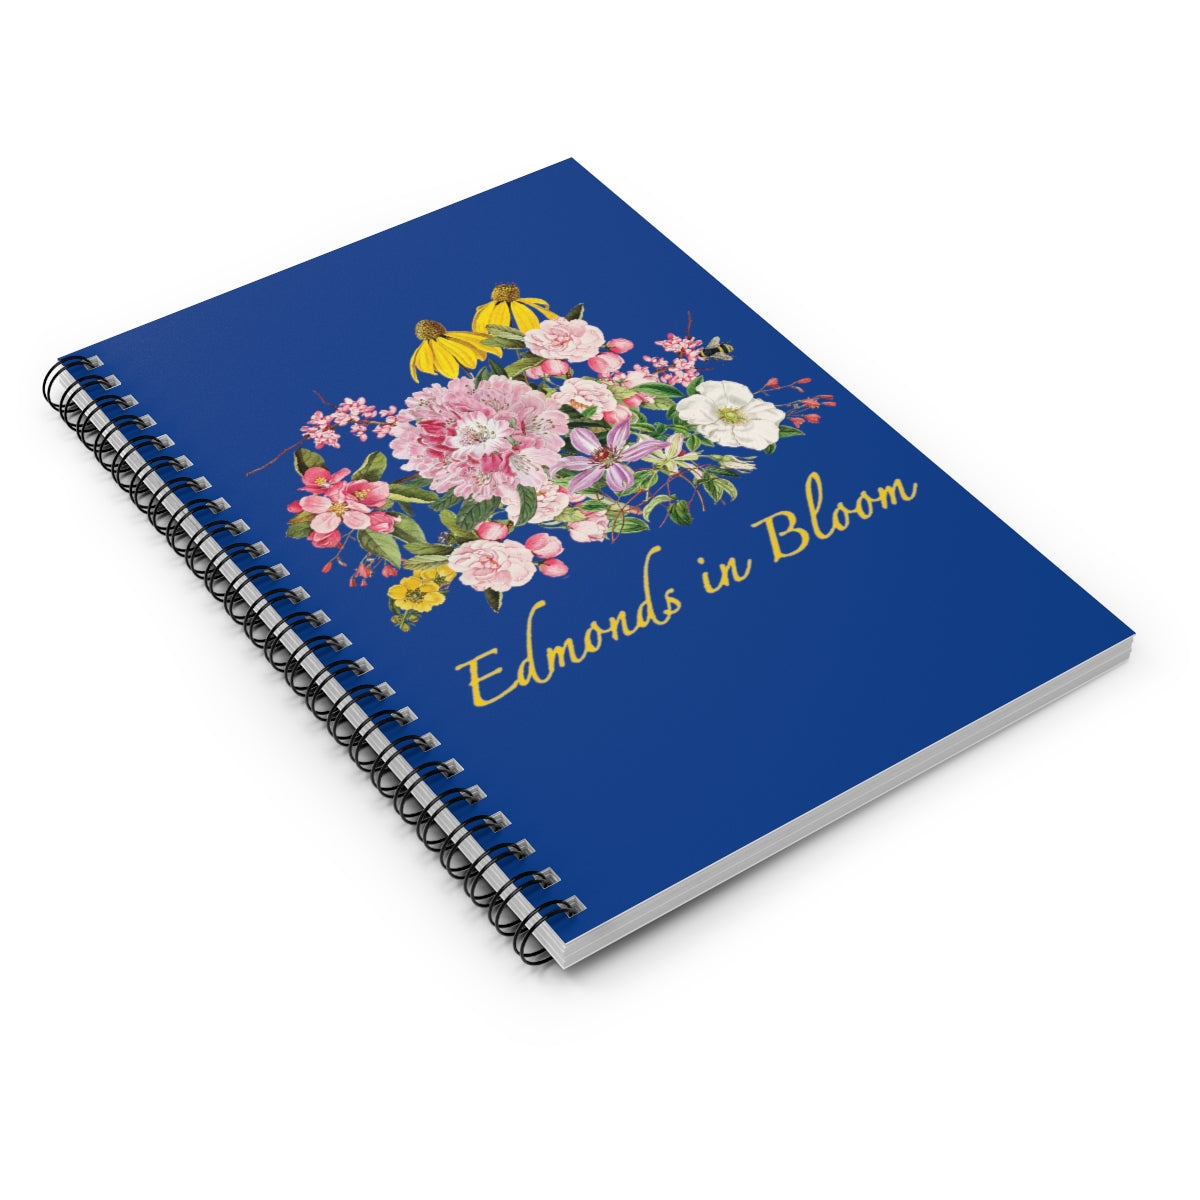 Edmonds in Bloom Spiral Notebook (Blue) - Ruled Line